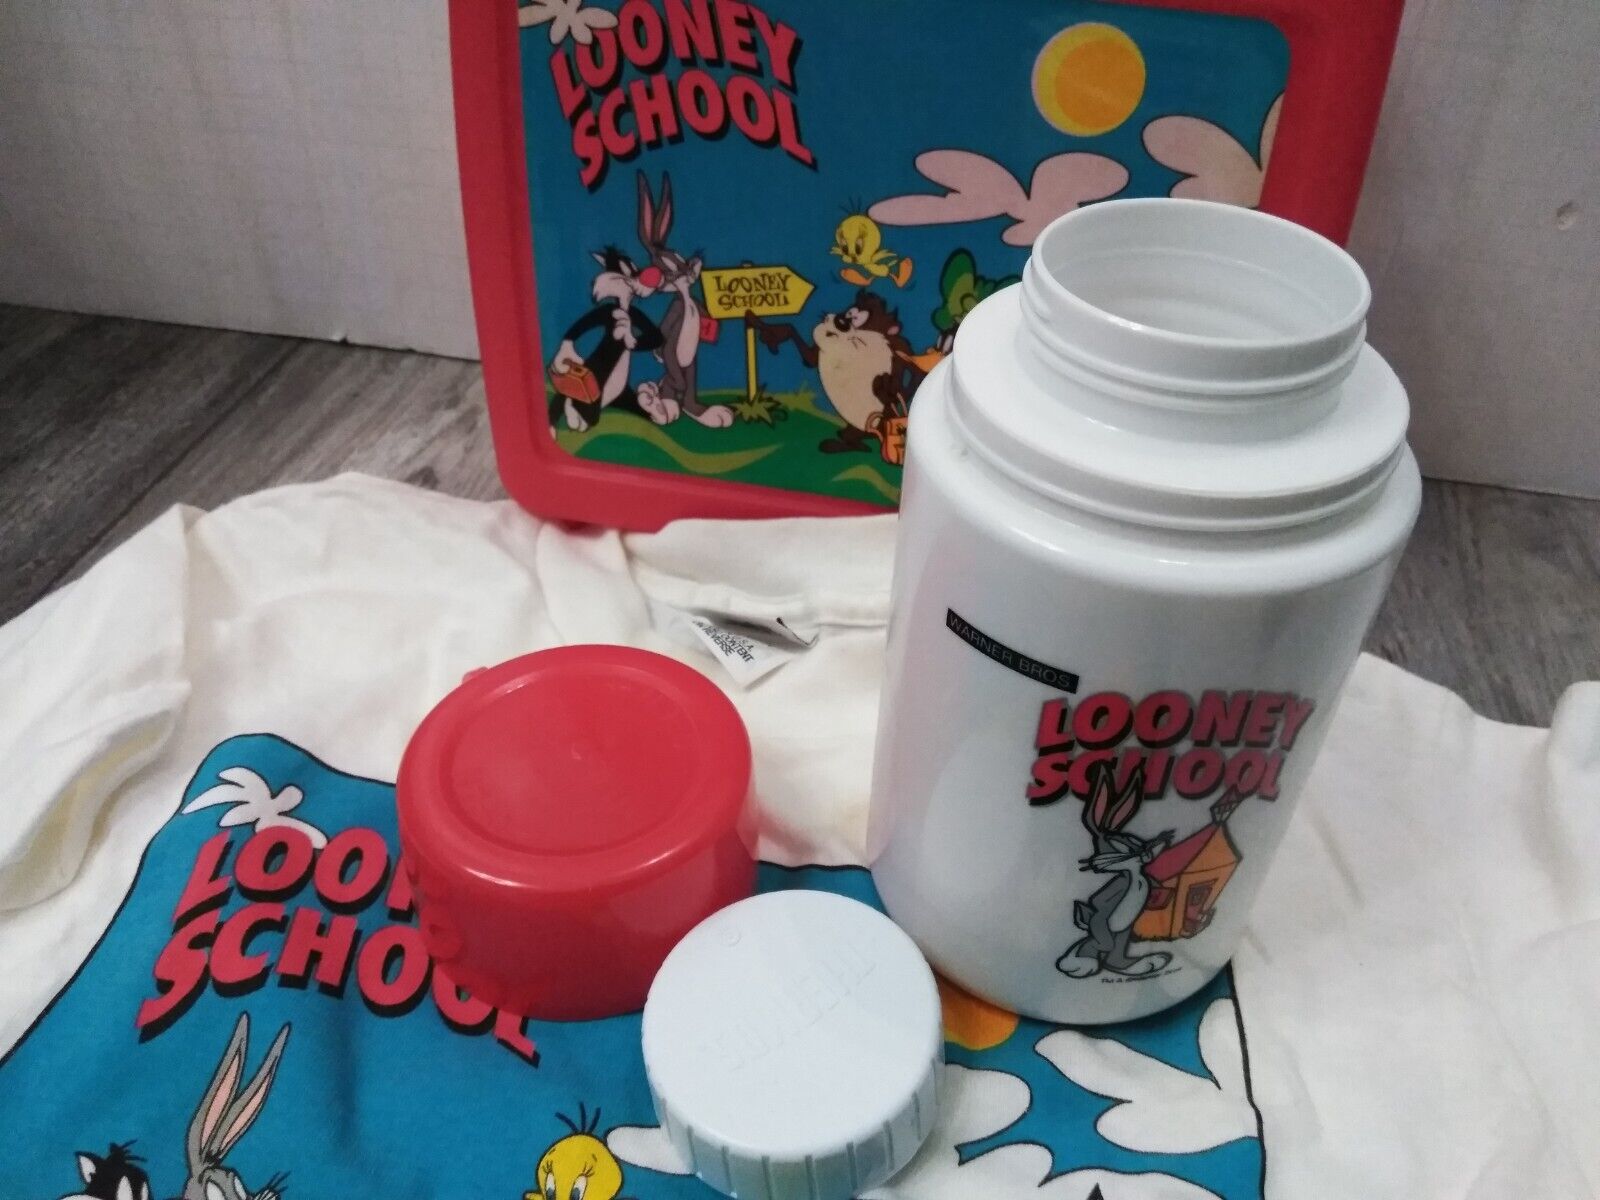 N.O.S. WARNER BROS. 1990'S Looney Tunes, Looney School RED Lunchbox W/ T-SHIRT Thermos - фотография #7